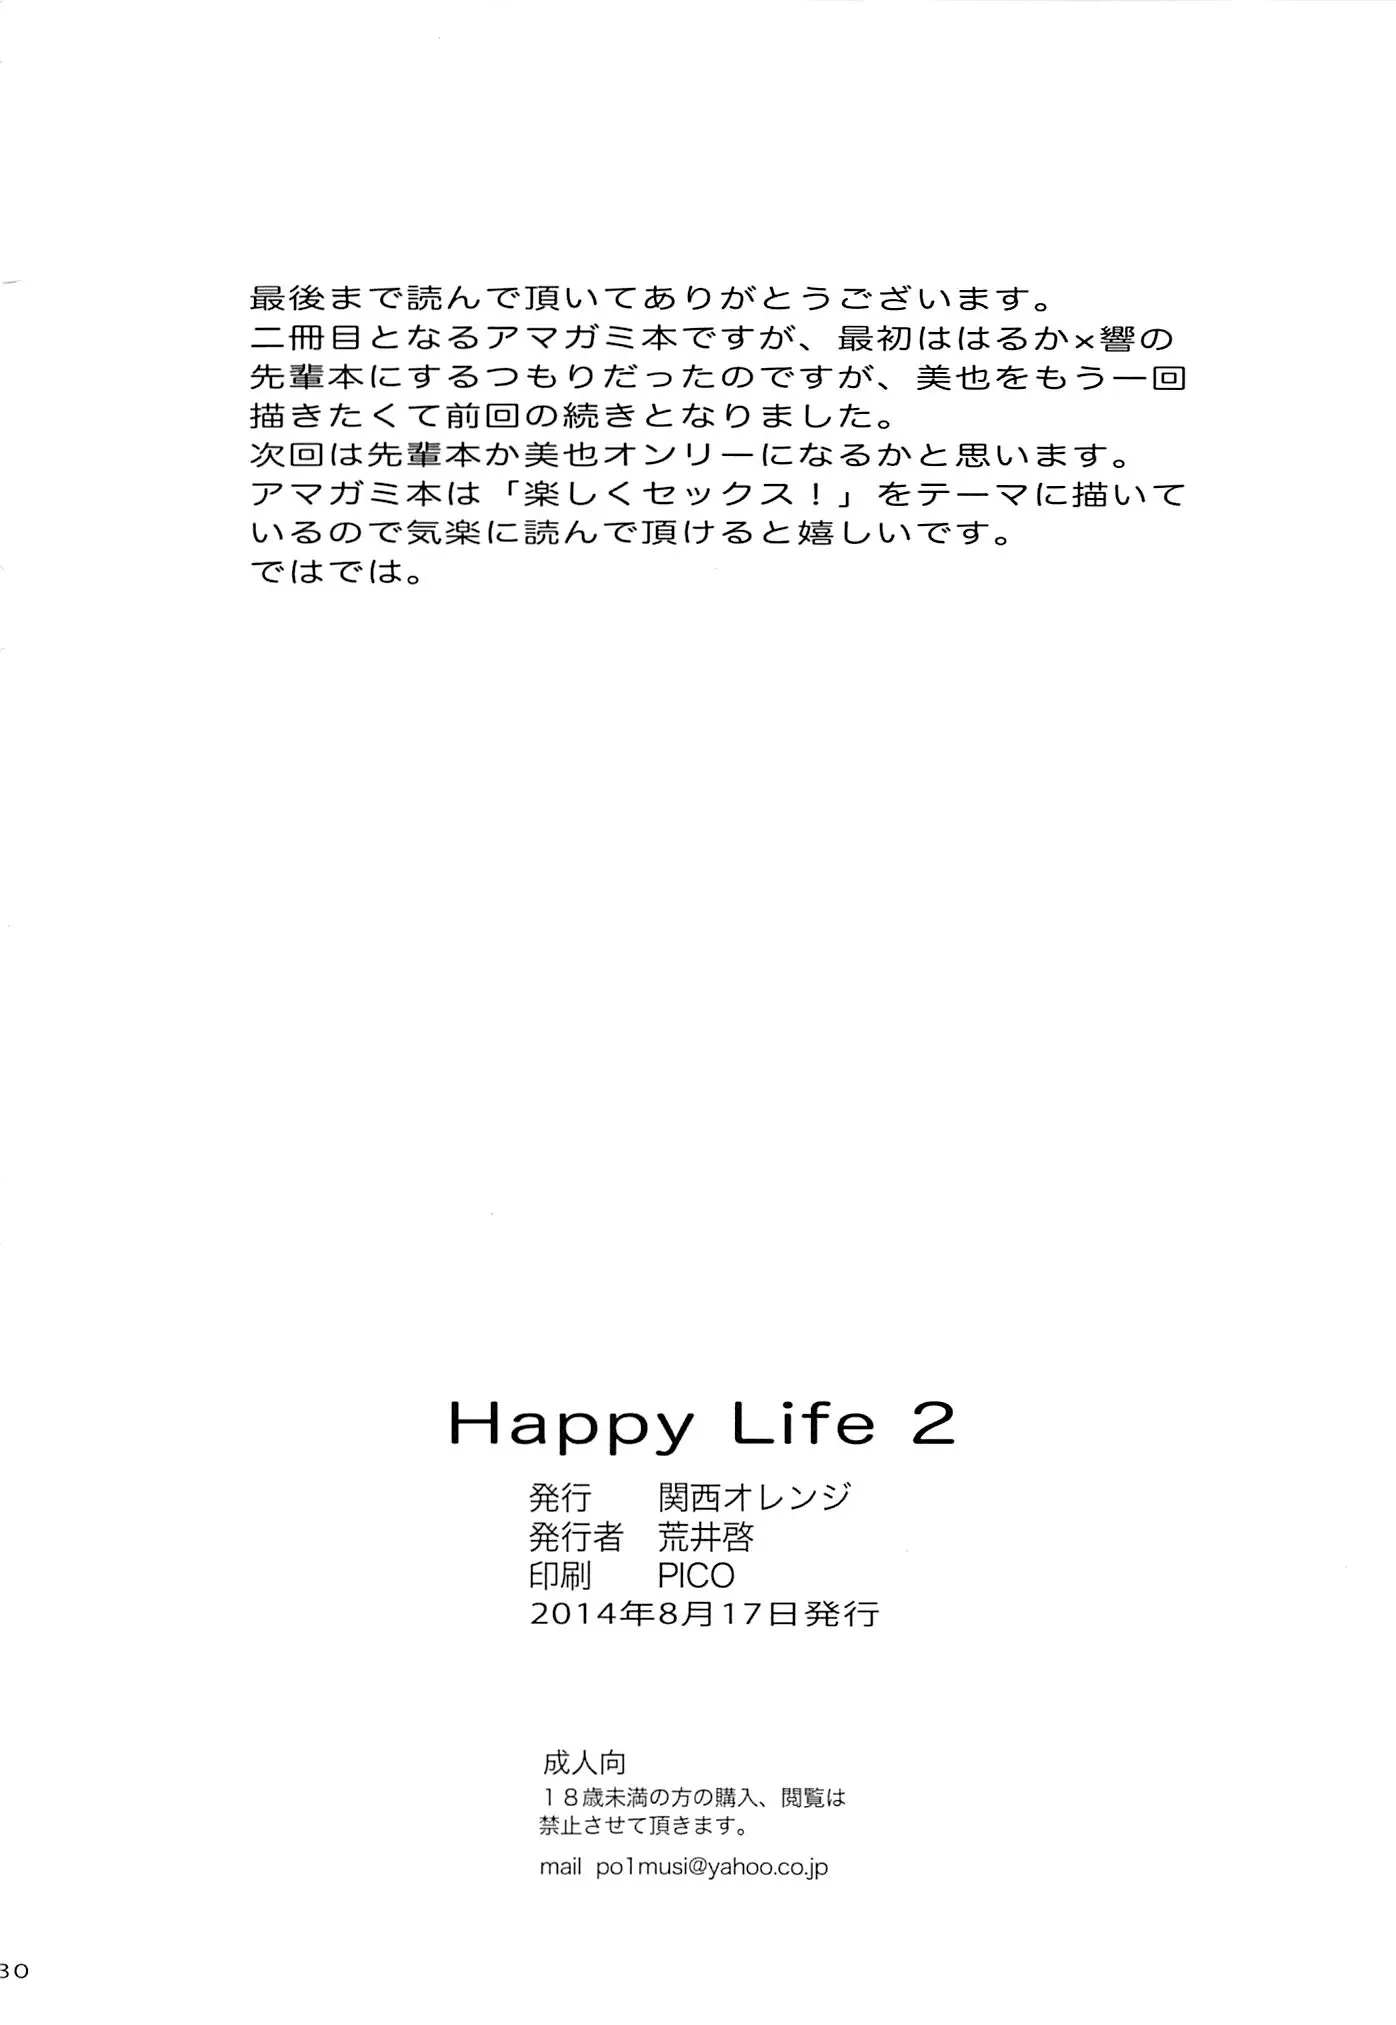 Happy Life2